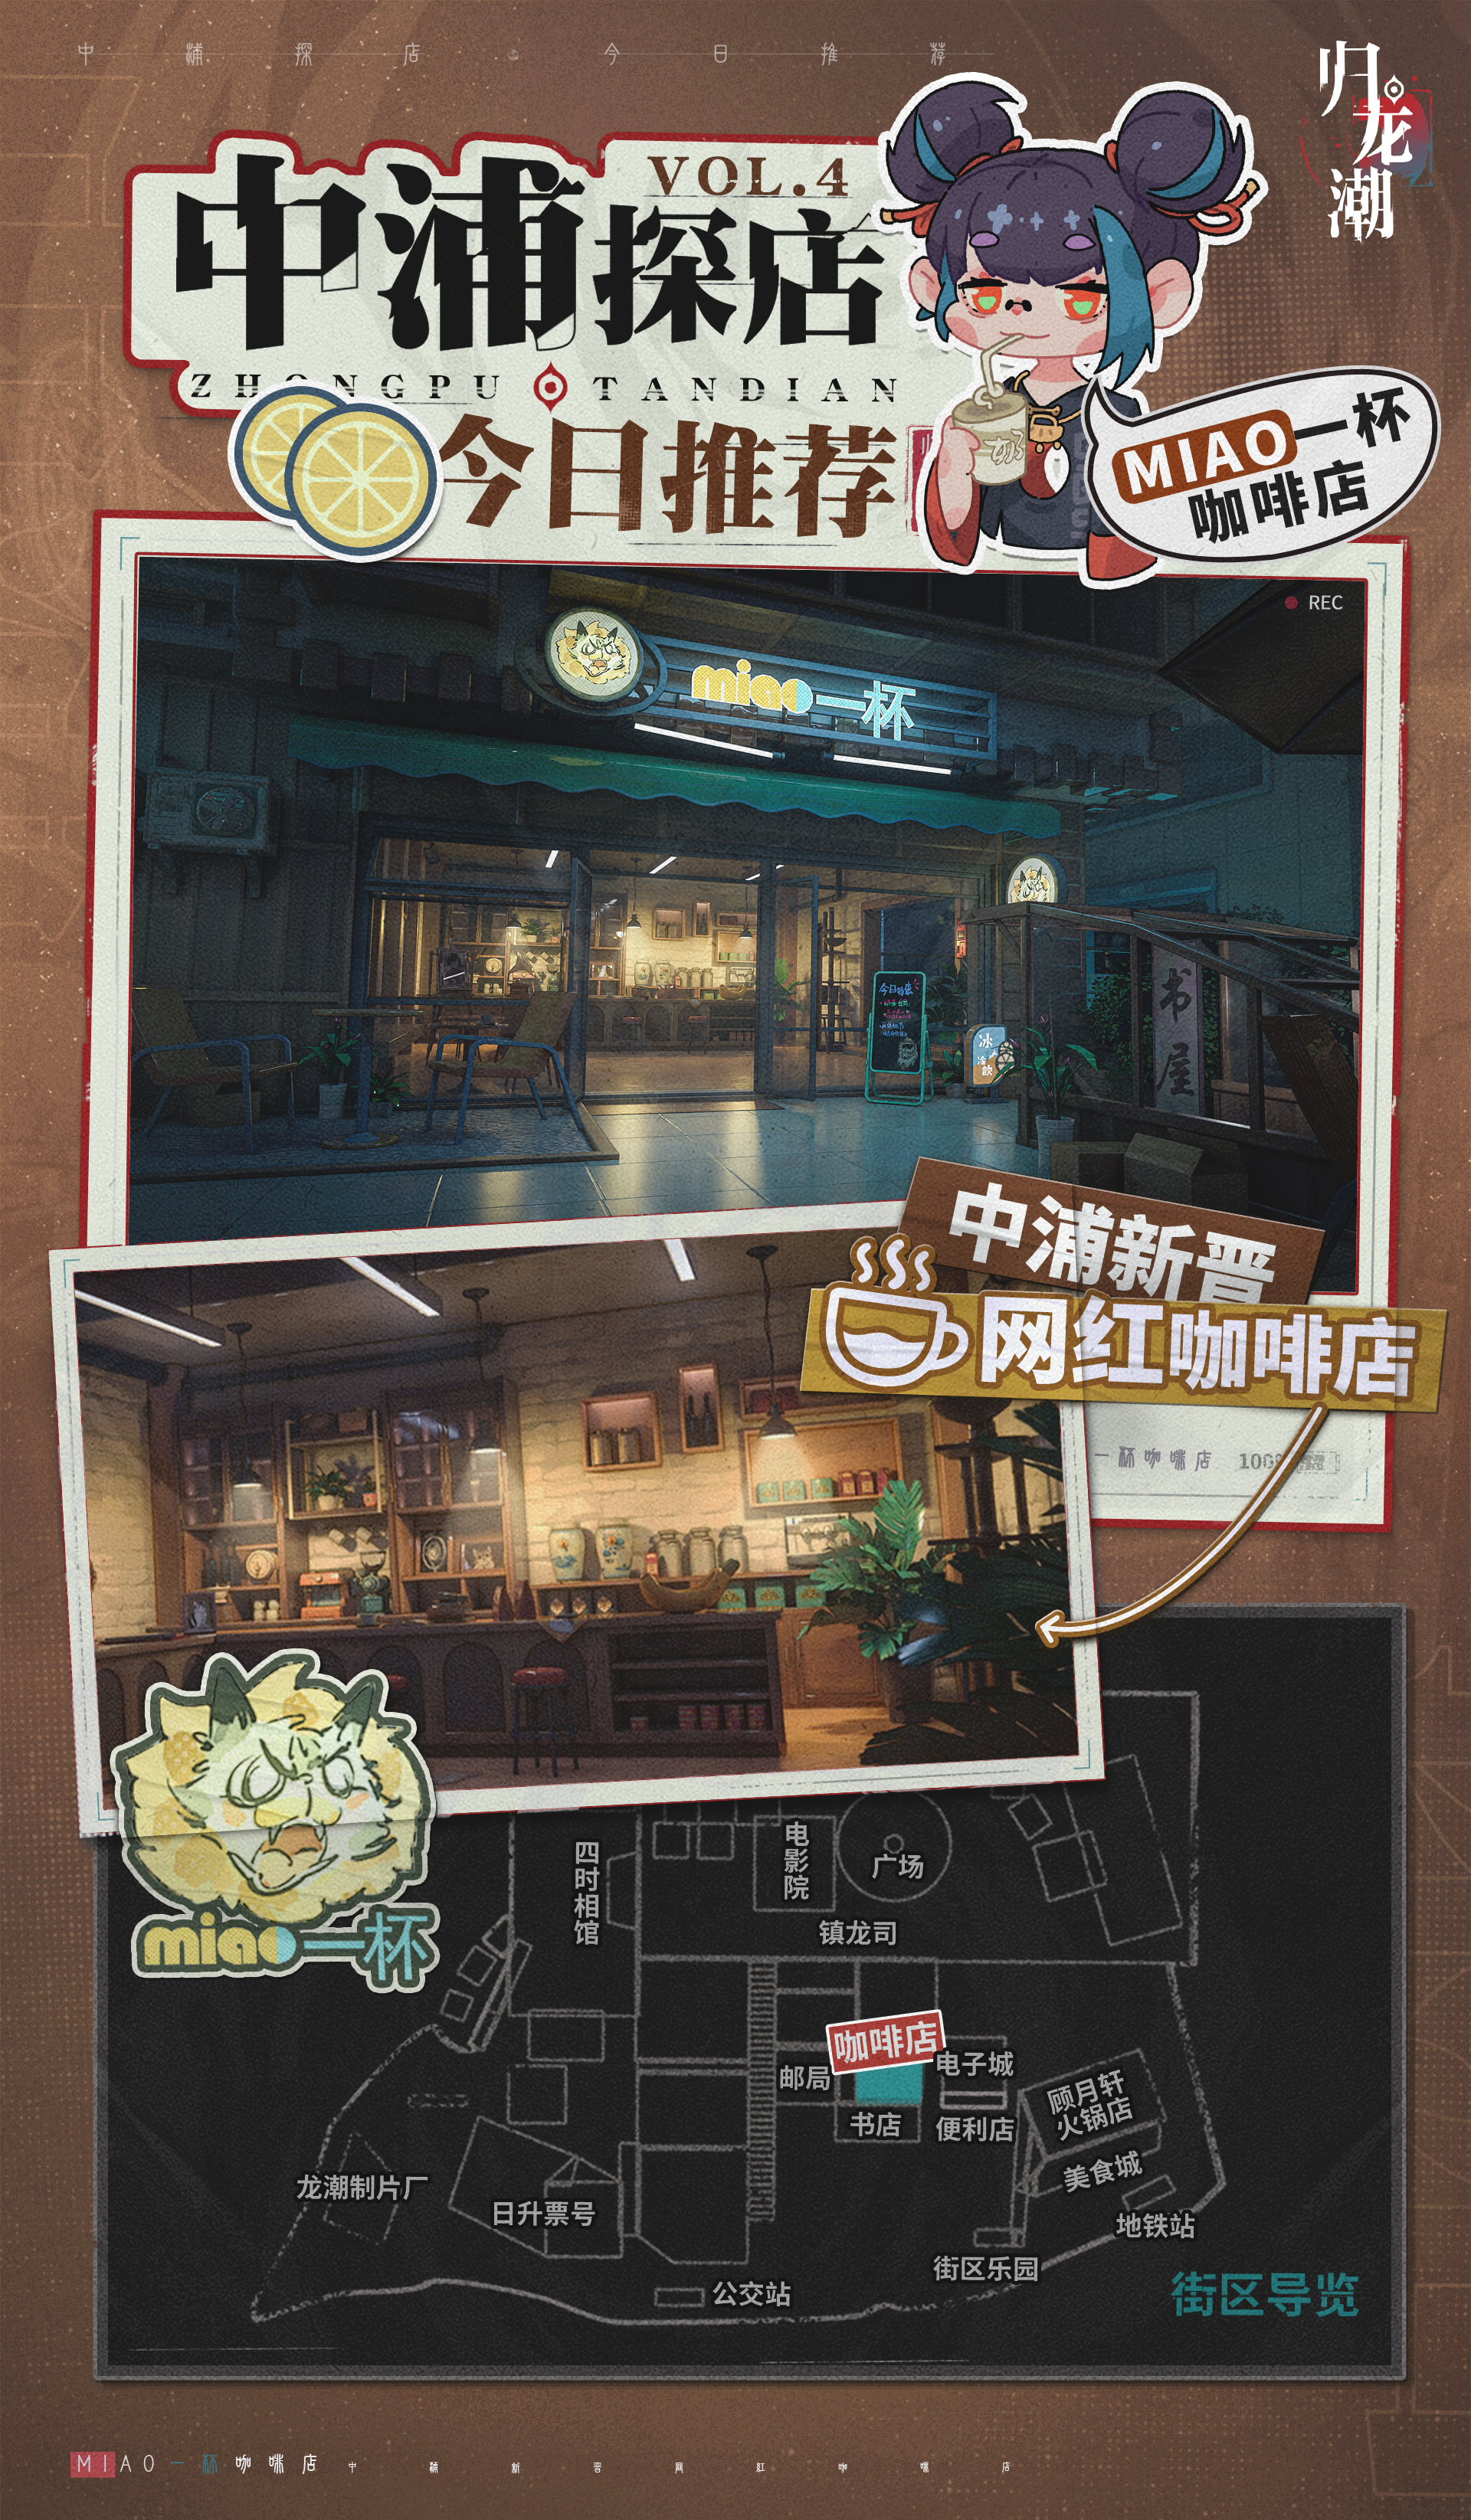 【归龙潮】【中浦导览】设计需求-MIAO一杯咖啡店.jpg